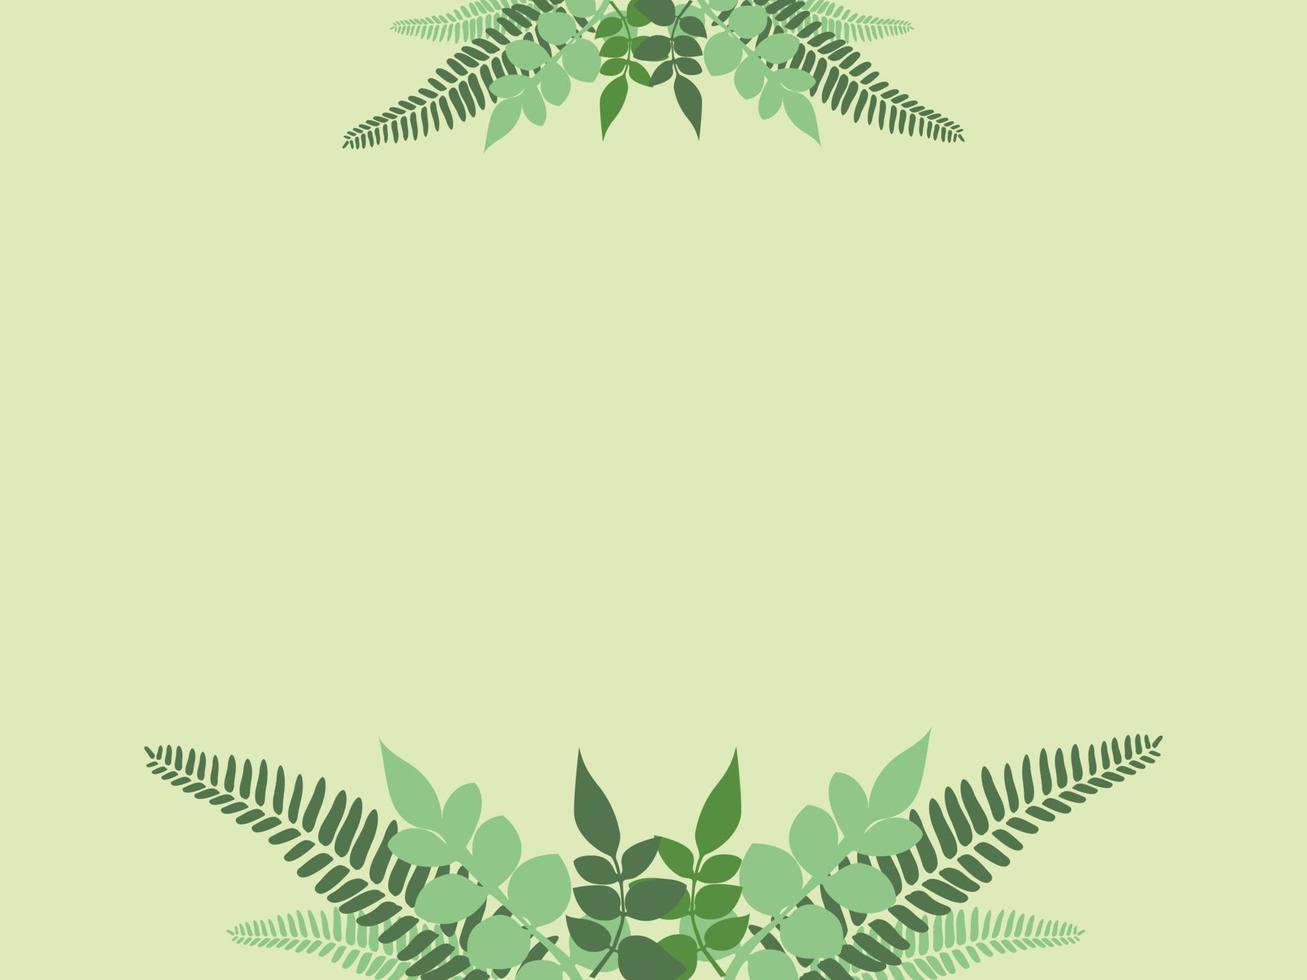 abstrakt bakgrund med pastellgröna bladkransvektordekorationer i mitten. eps10 vektor